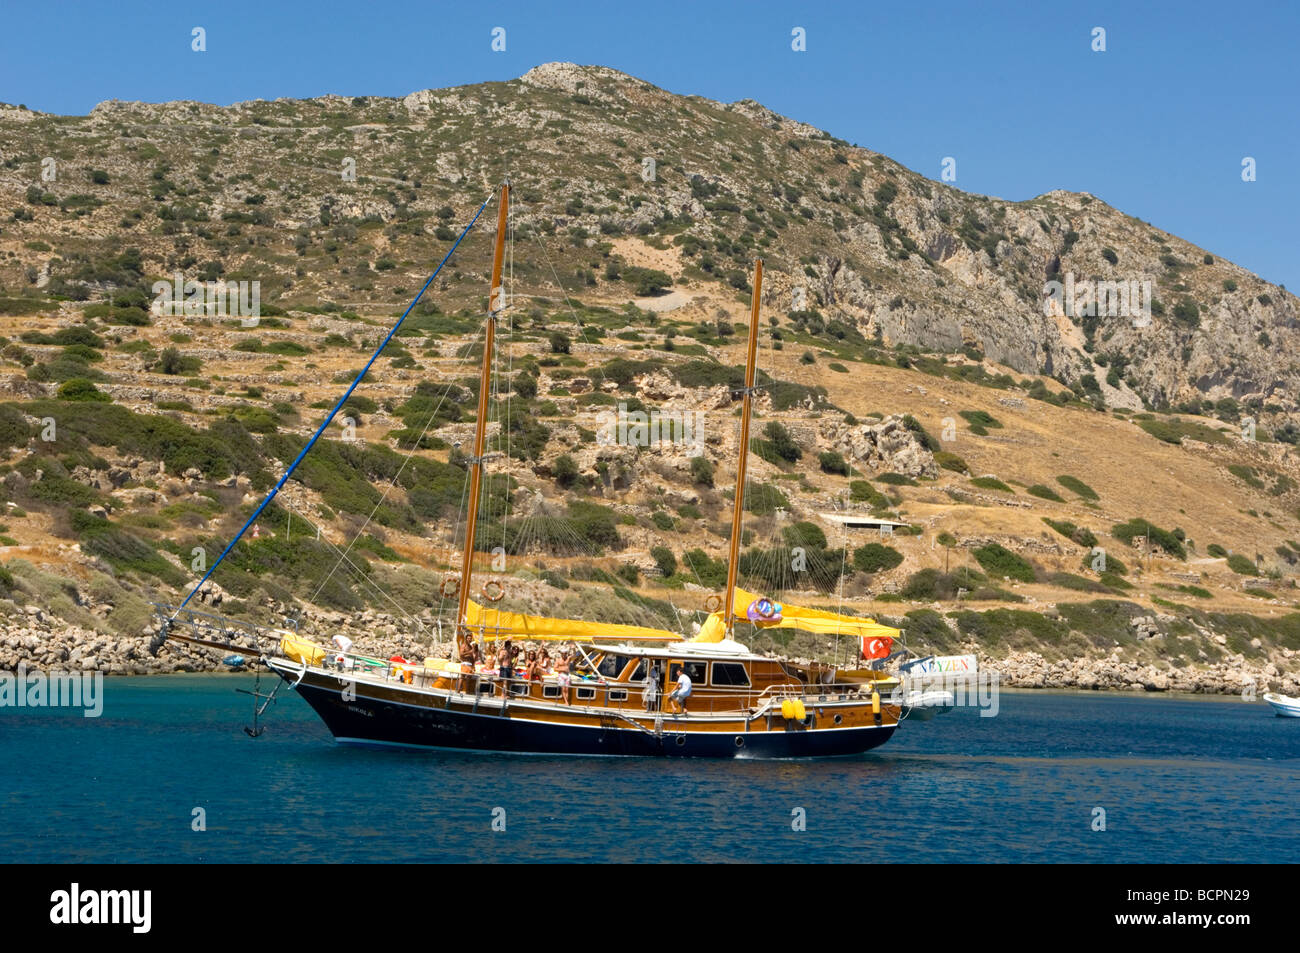 Un bateau de tourisme dans la mer Méditerranée Banque D'Images